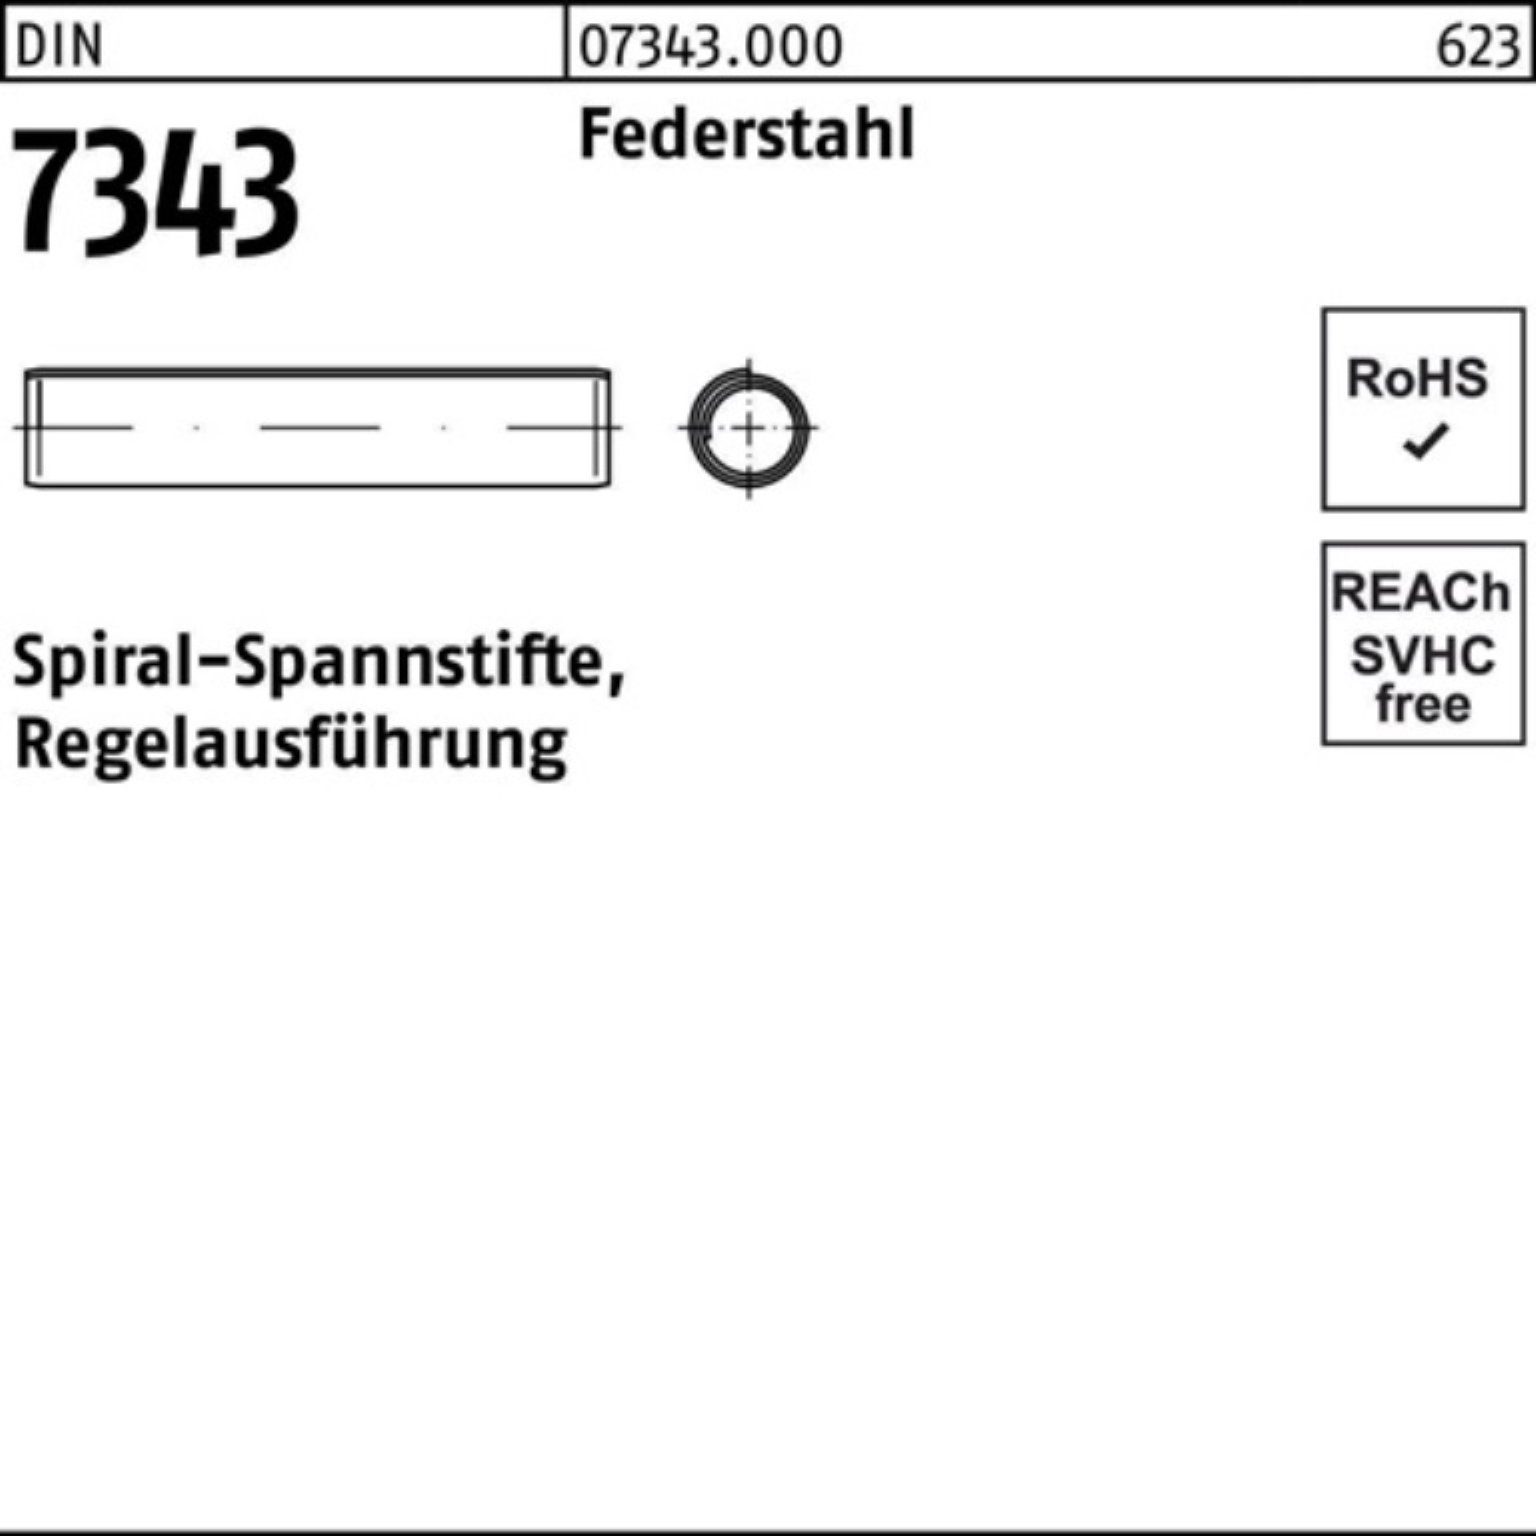 2024 günstiger Neuartikel Reyher Spannstift 250er Pack 7343/ISO 50 Federstahl 8750 10x Spiralspannstift DIN Regela